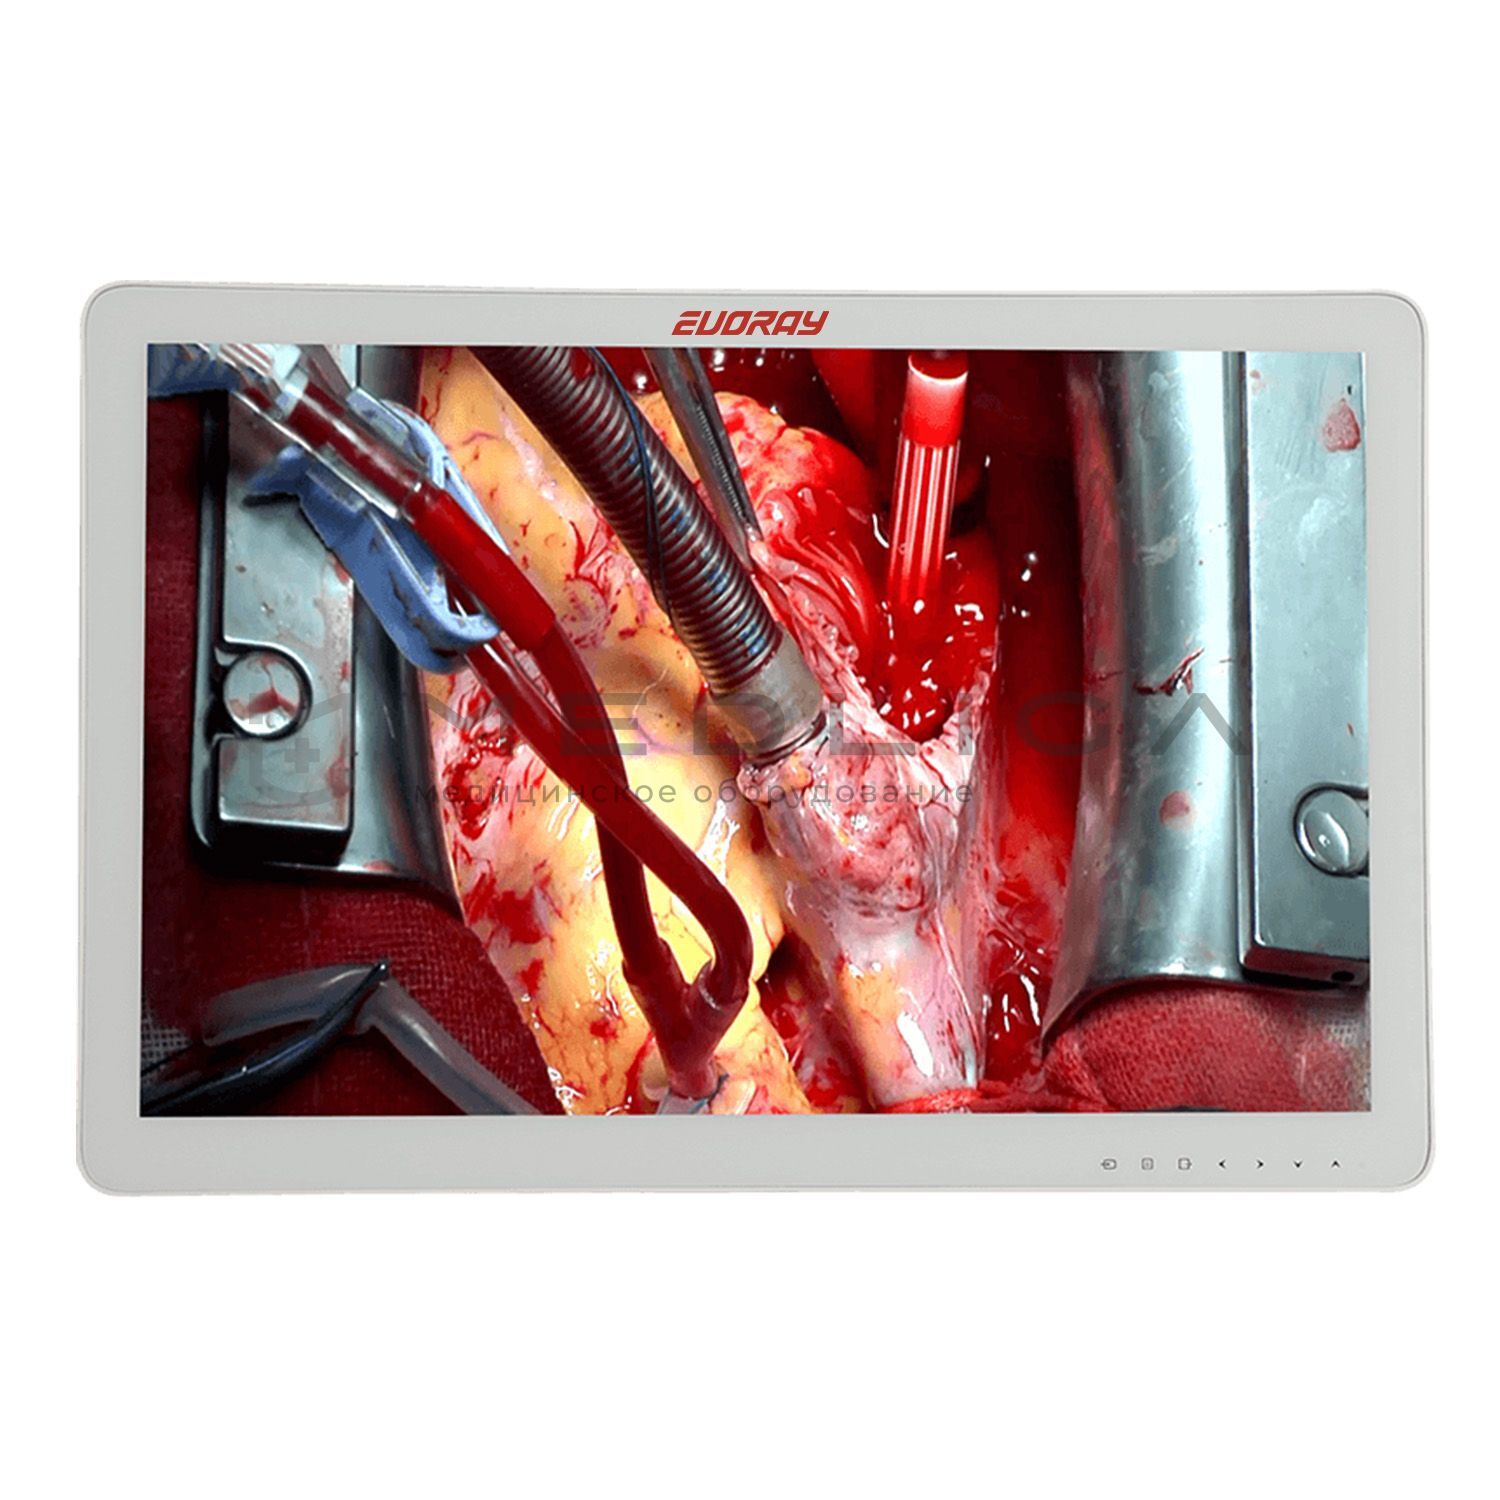 Монитор 32" Full HD эндоскопический-хирургический EVORAY S3221P